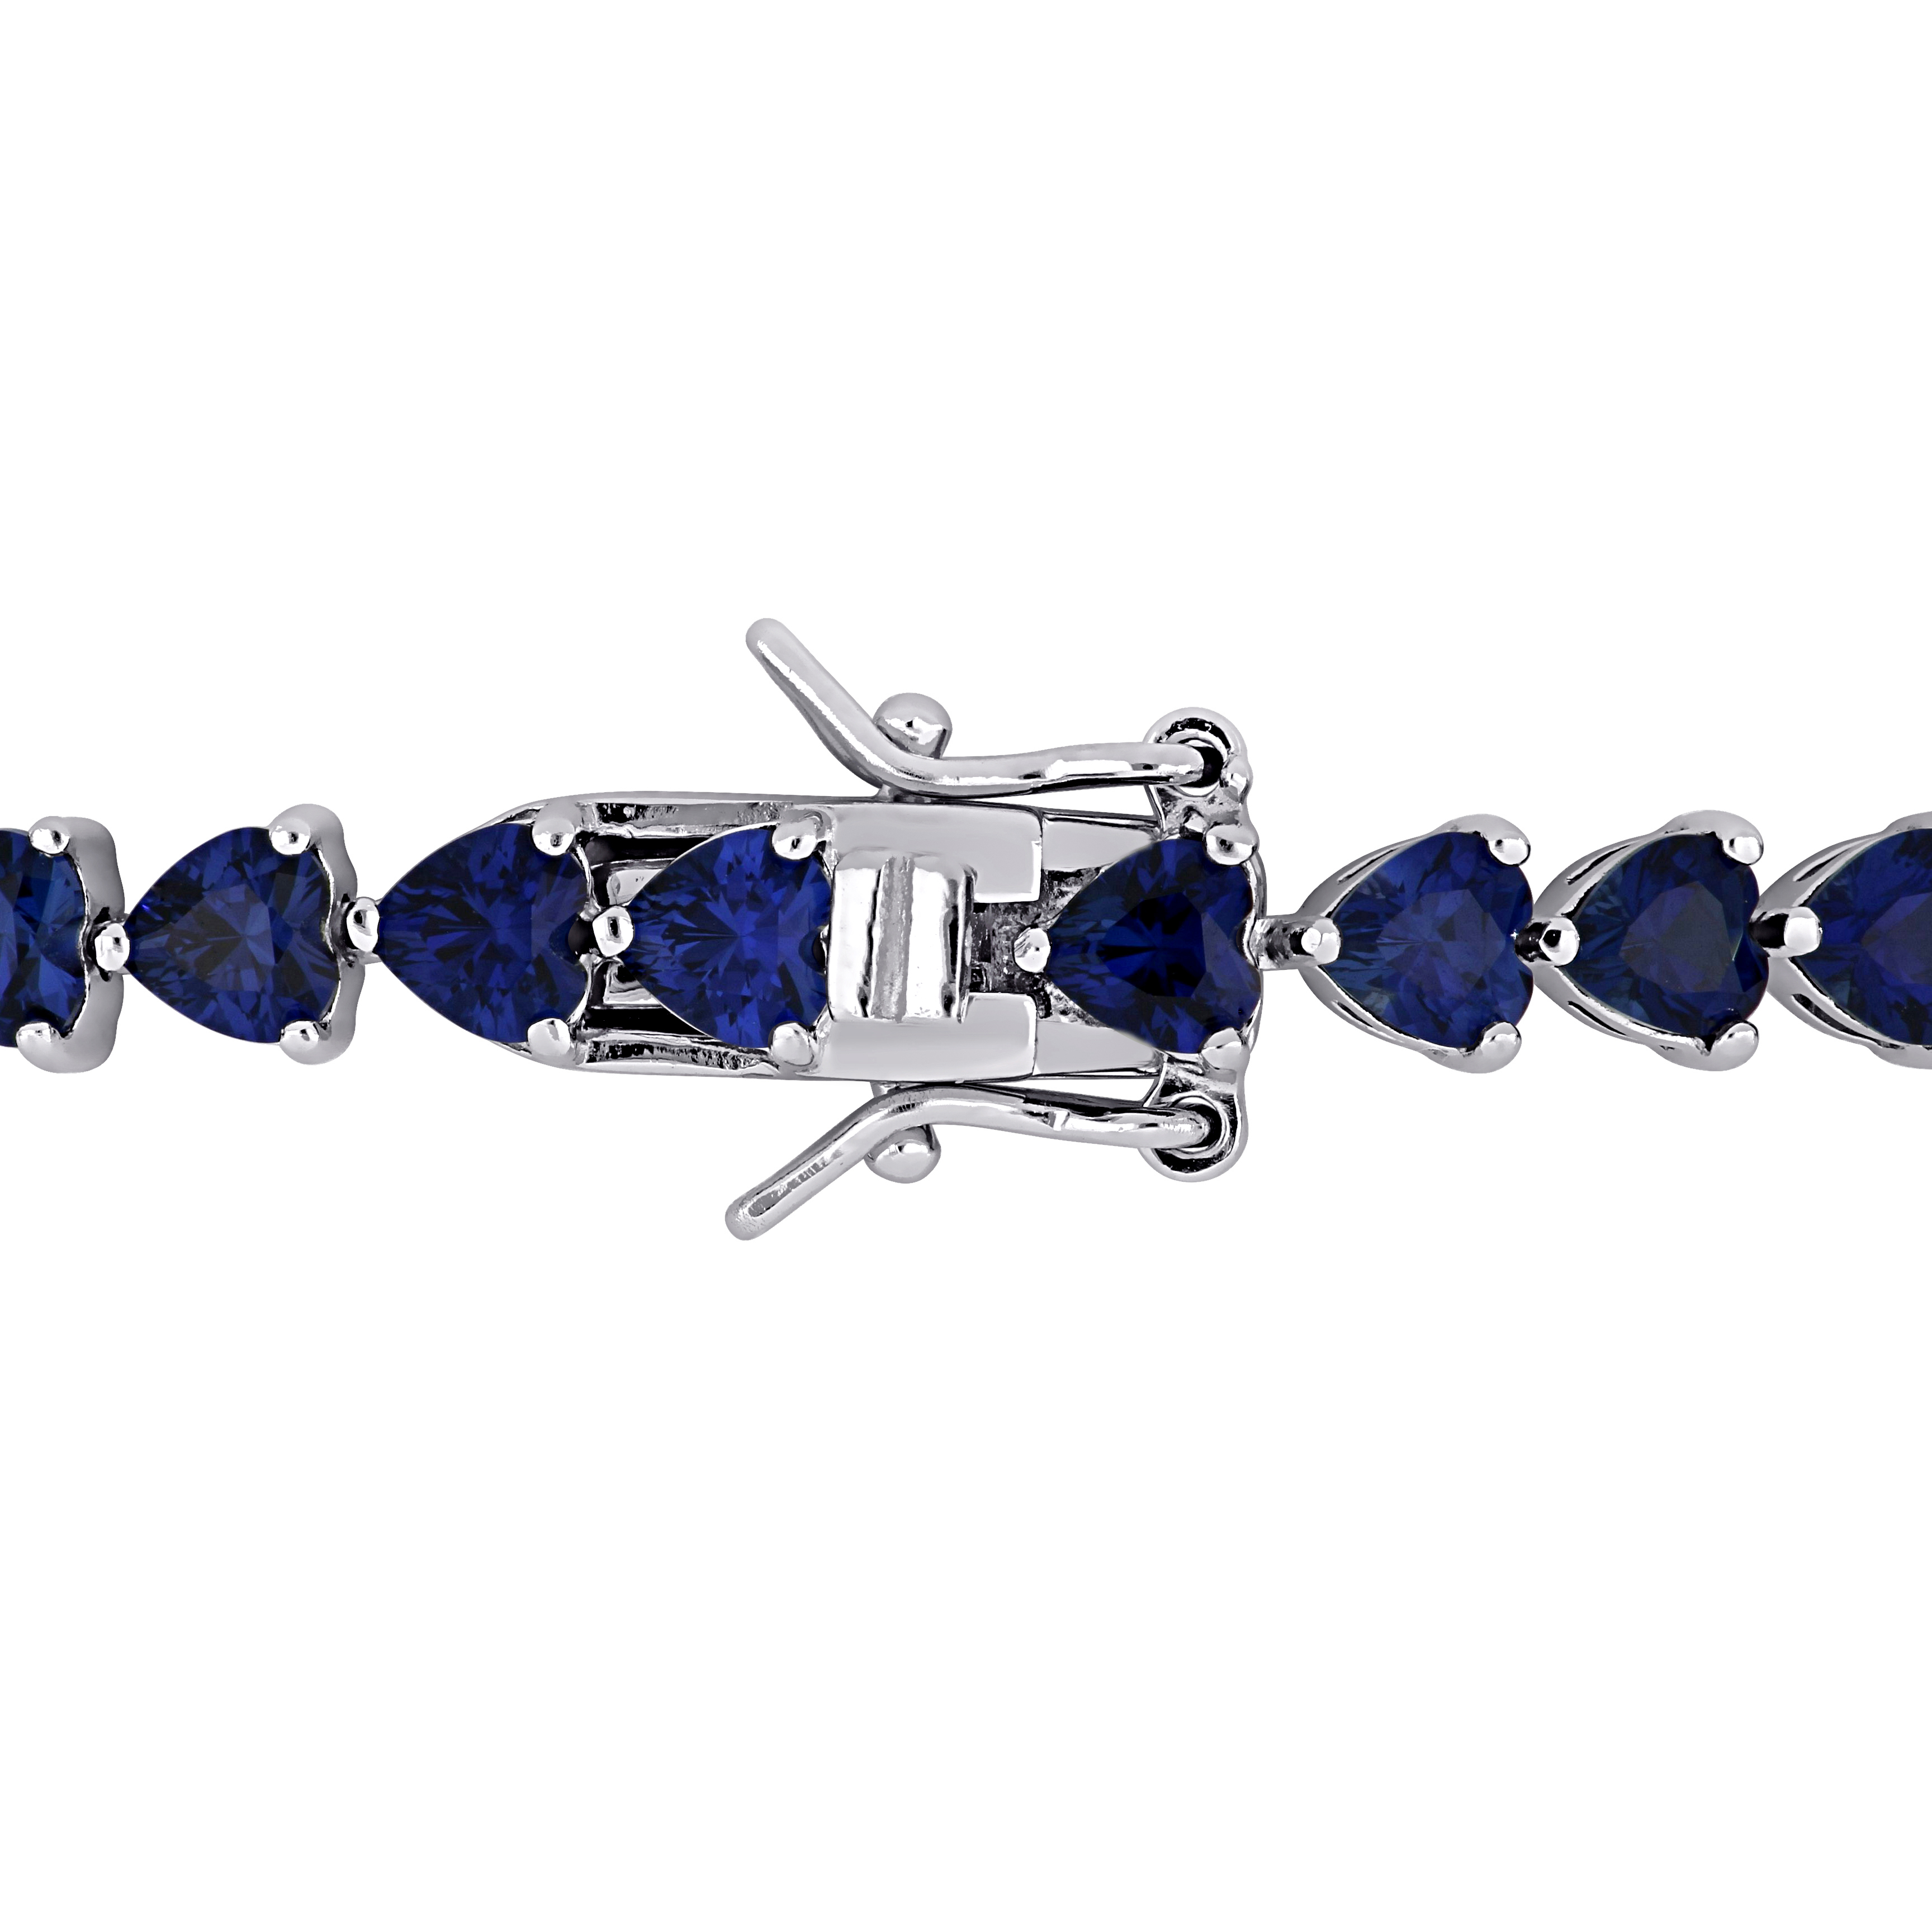 11.40 CT TGW Heart Shape Created Blue Sapphire Tennis Bracelet in Sterling Silver - 7.5 in.